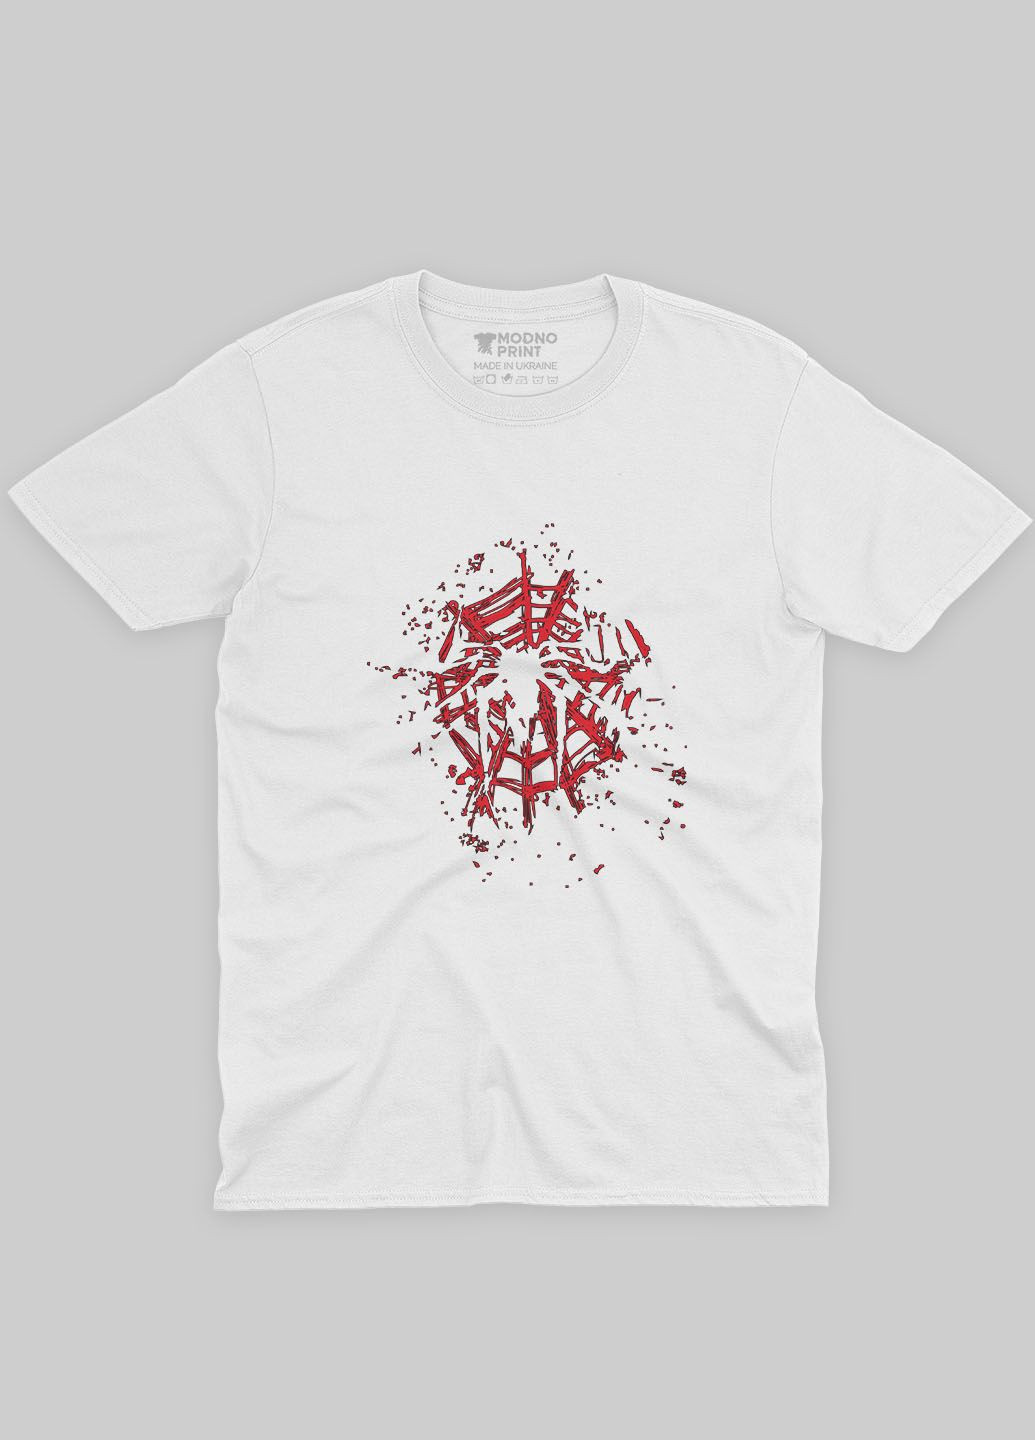 Біла демісезонна футболка для хлопчика з принтом супергероя - людина-павук (ts001-1-whi-006-014-003-b) Modno